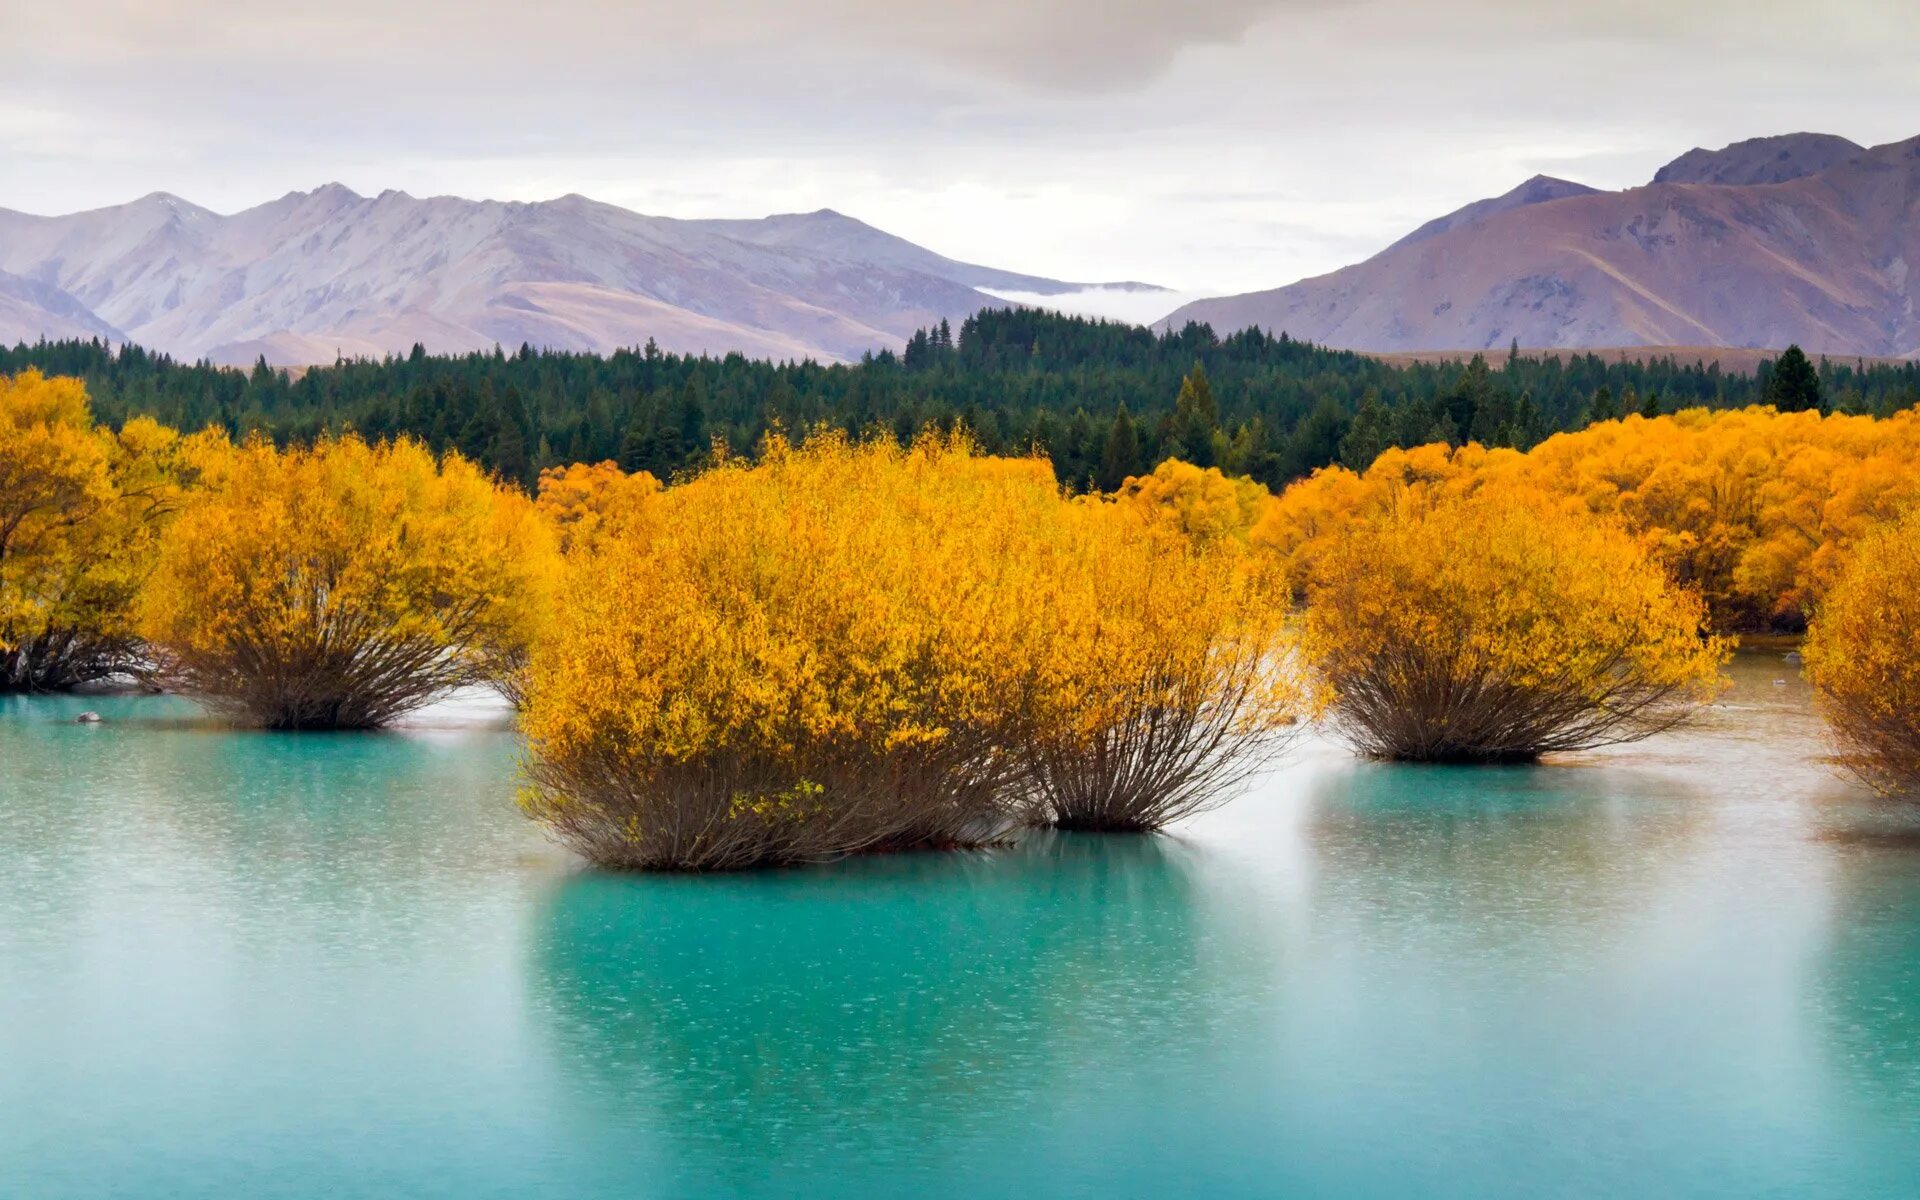 Bing imagine. Голубое озеро новая Зеландия. Озера новой Зеландии. Новая Зеландия фото природы. Пейзажи новой Зеландии.